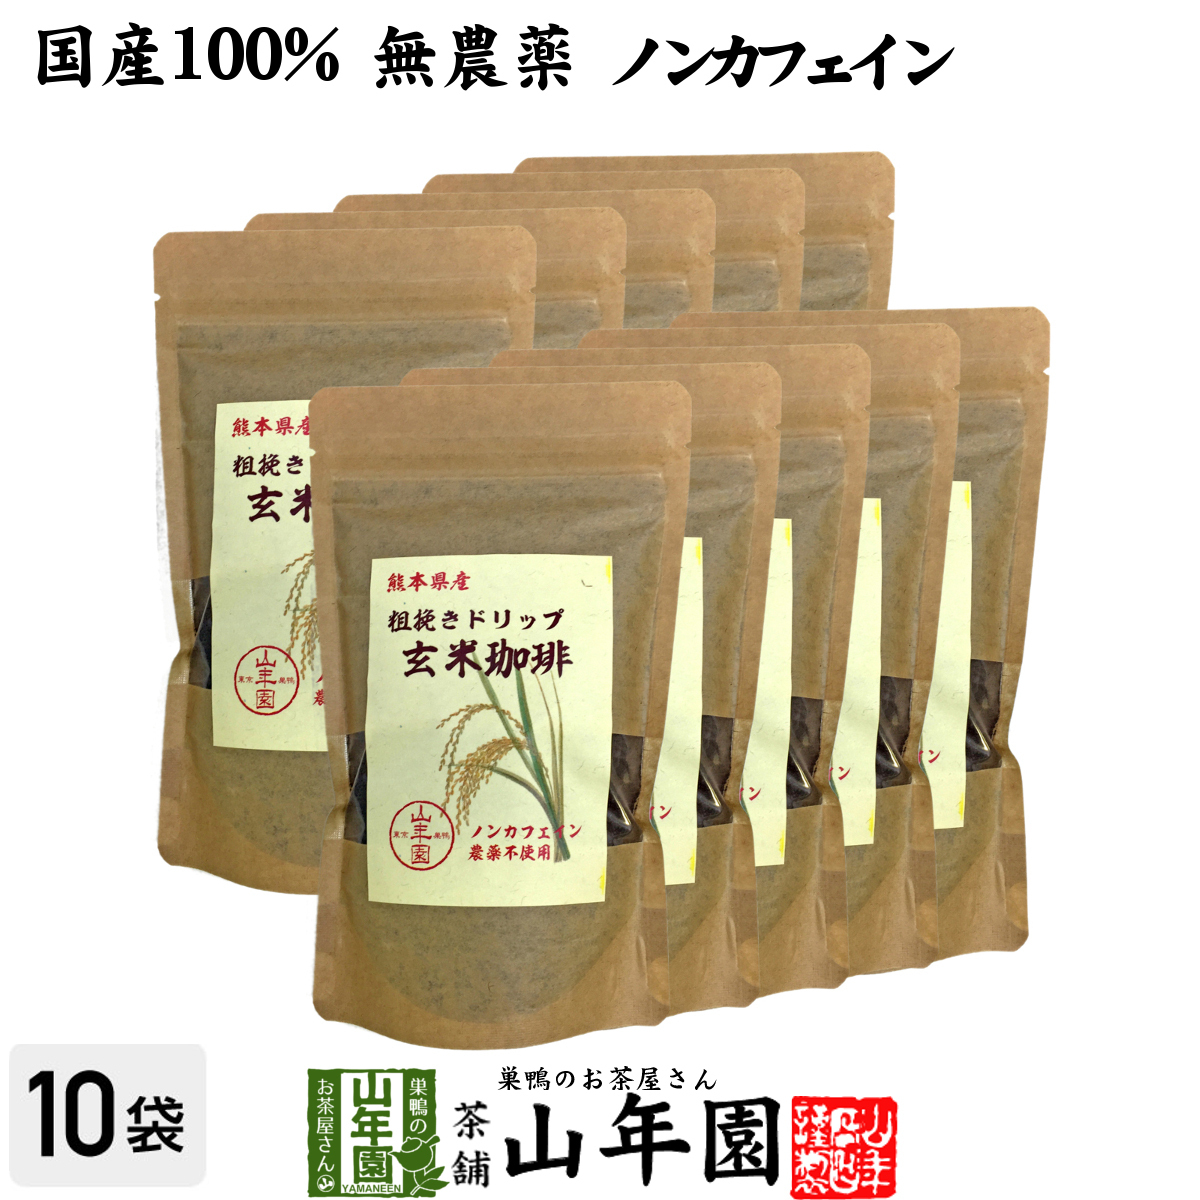 健康茶 国産100% 無農薬 玄米珈琲 200g×10袋セット ノンカフェイン 熊本県産 送料無料